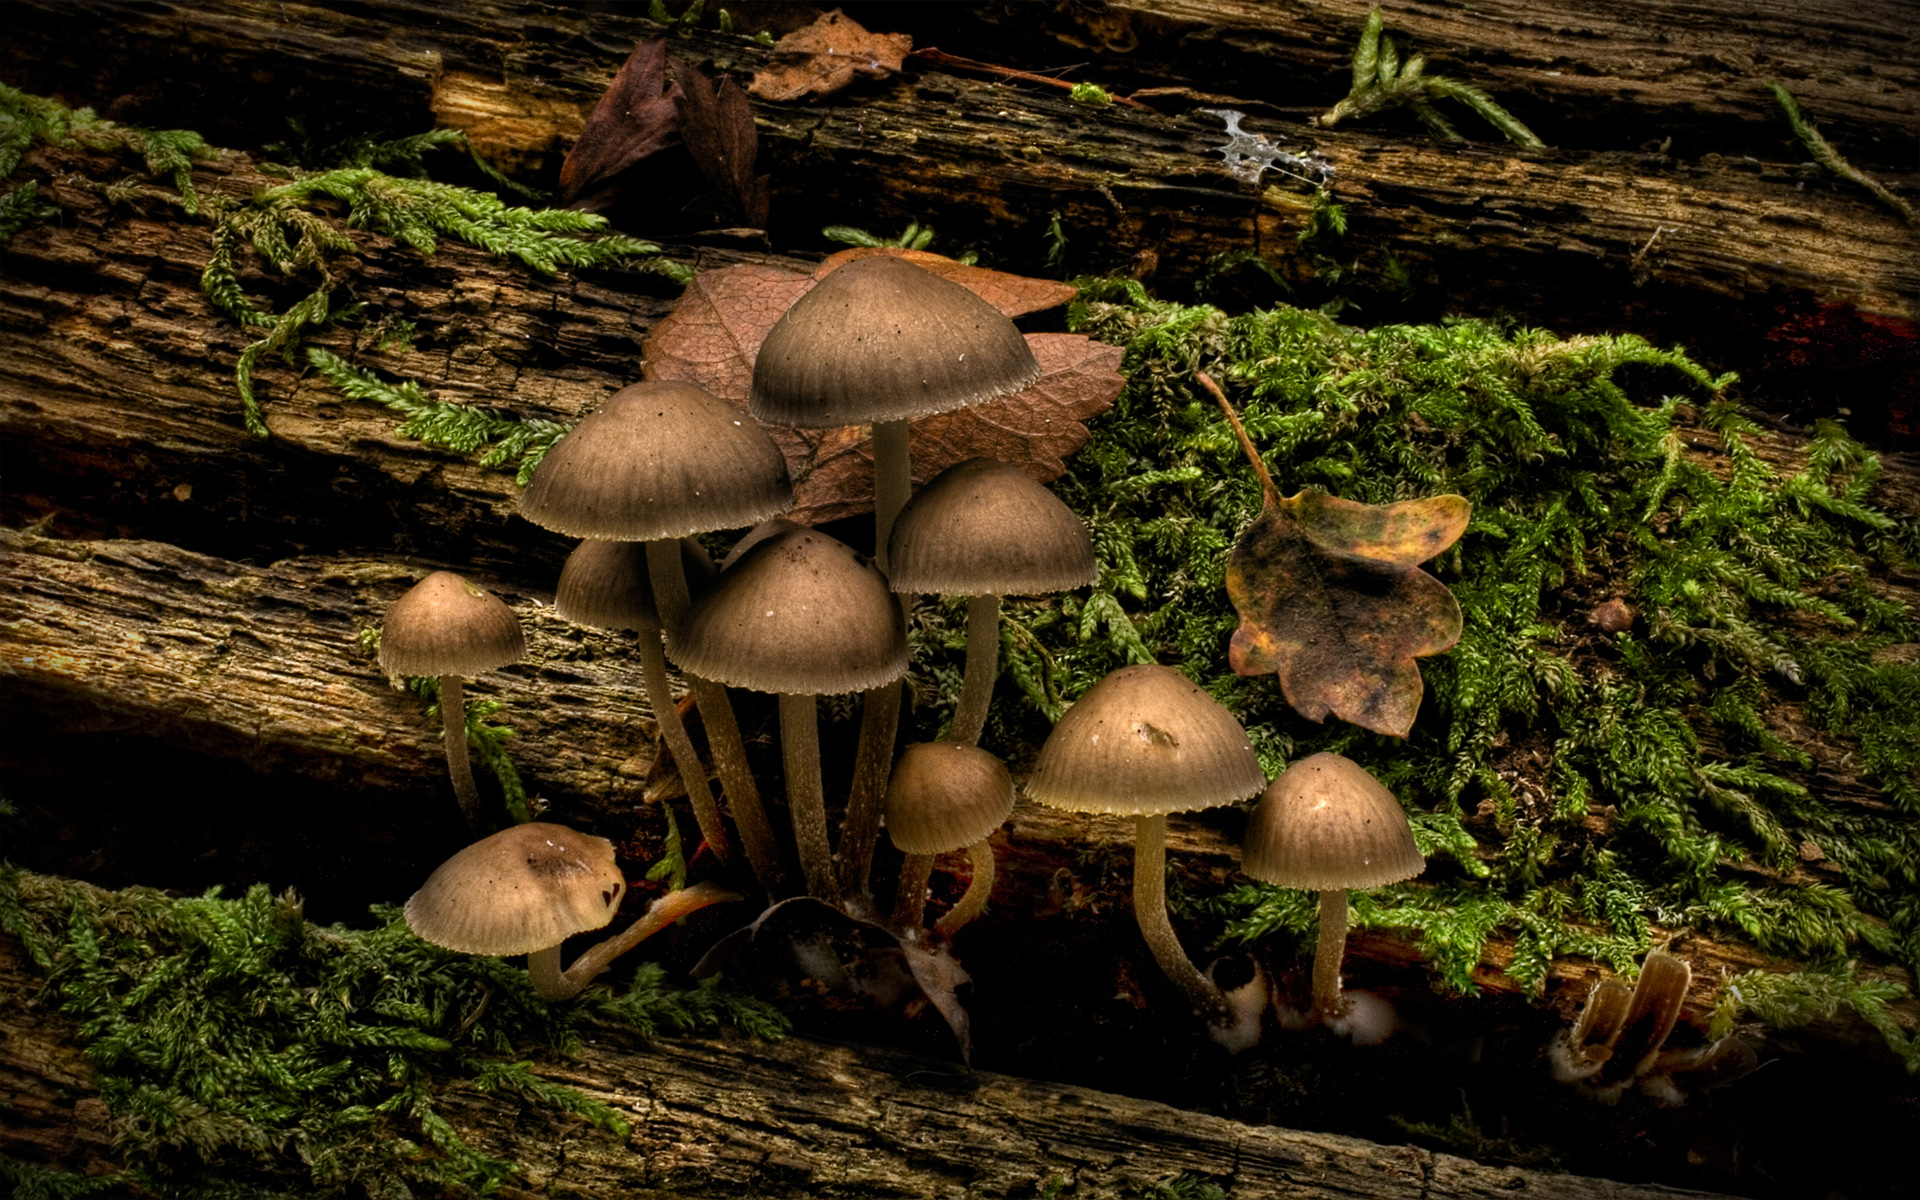 nature, dark, mushrooms, fungi - desktop wallpaper